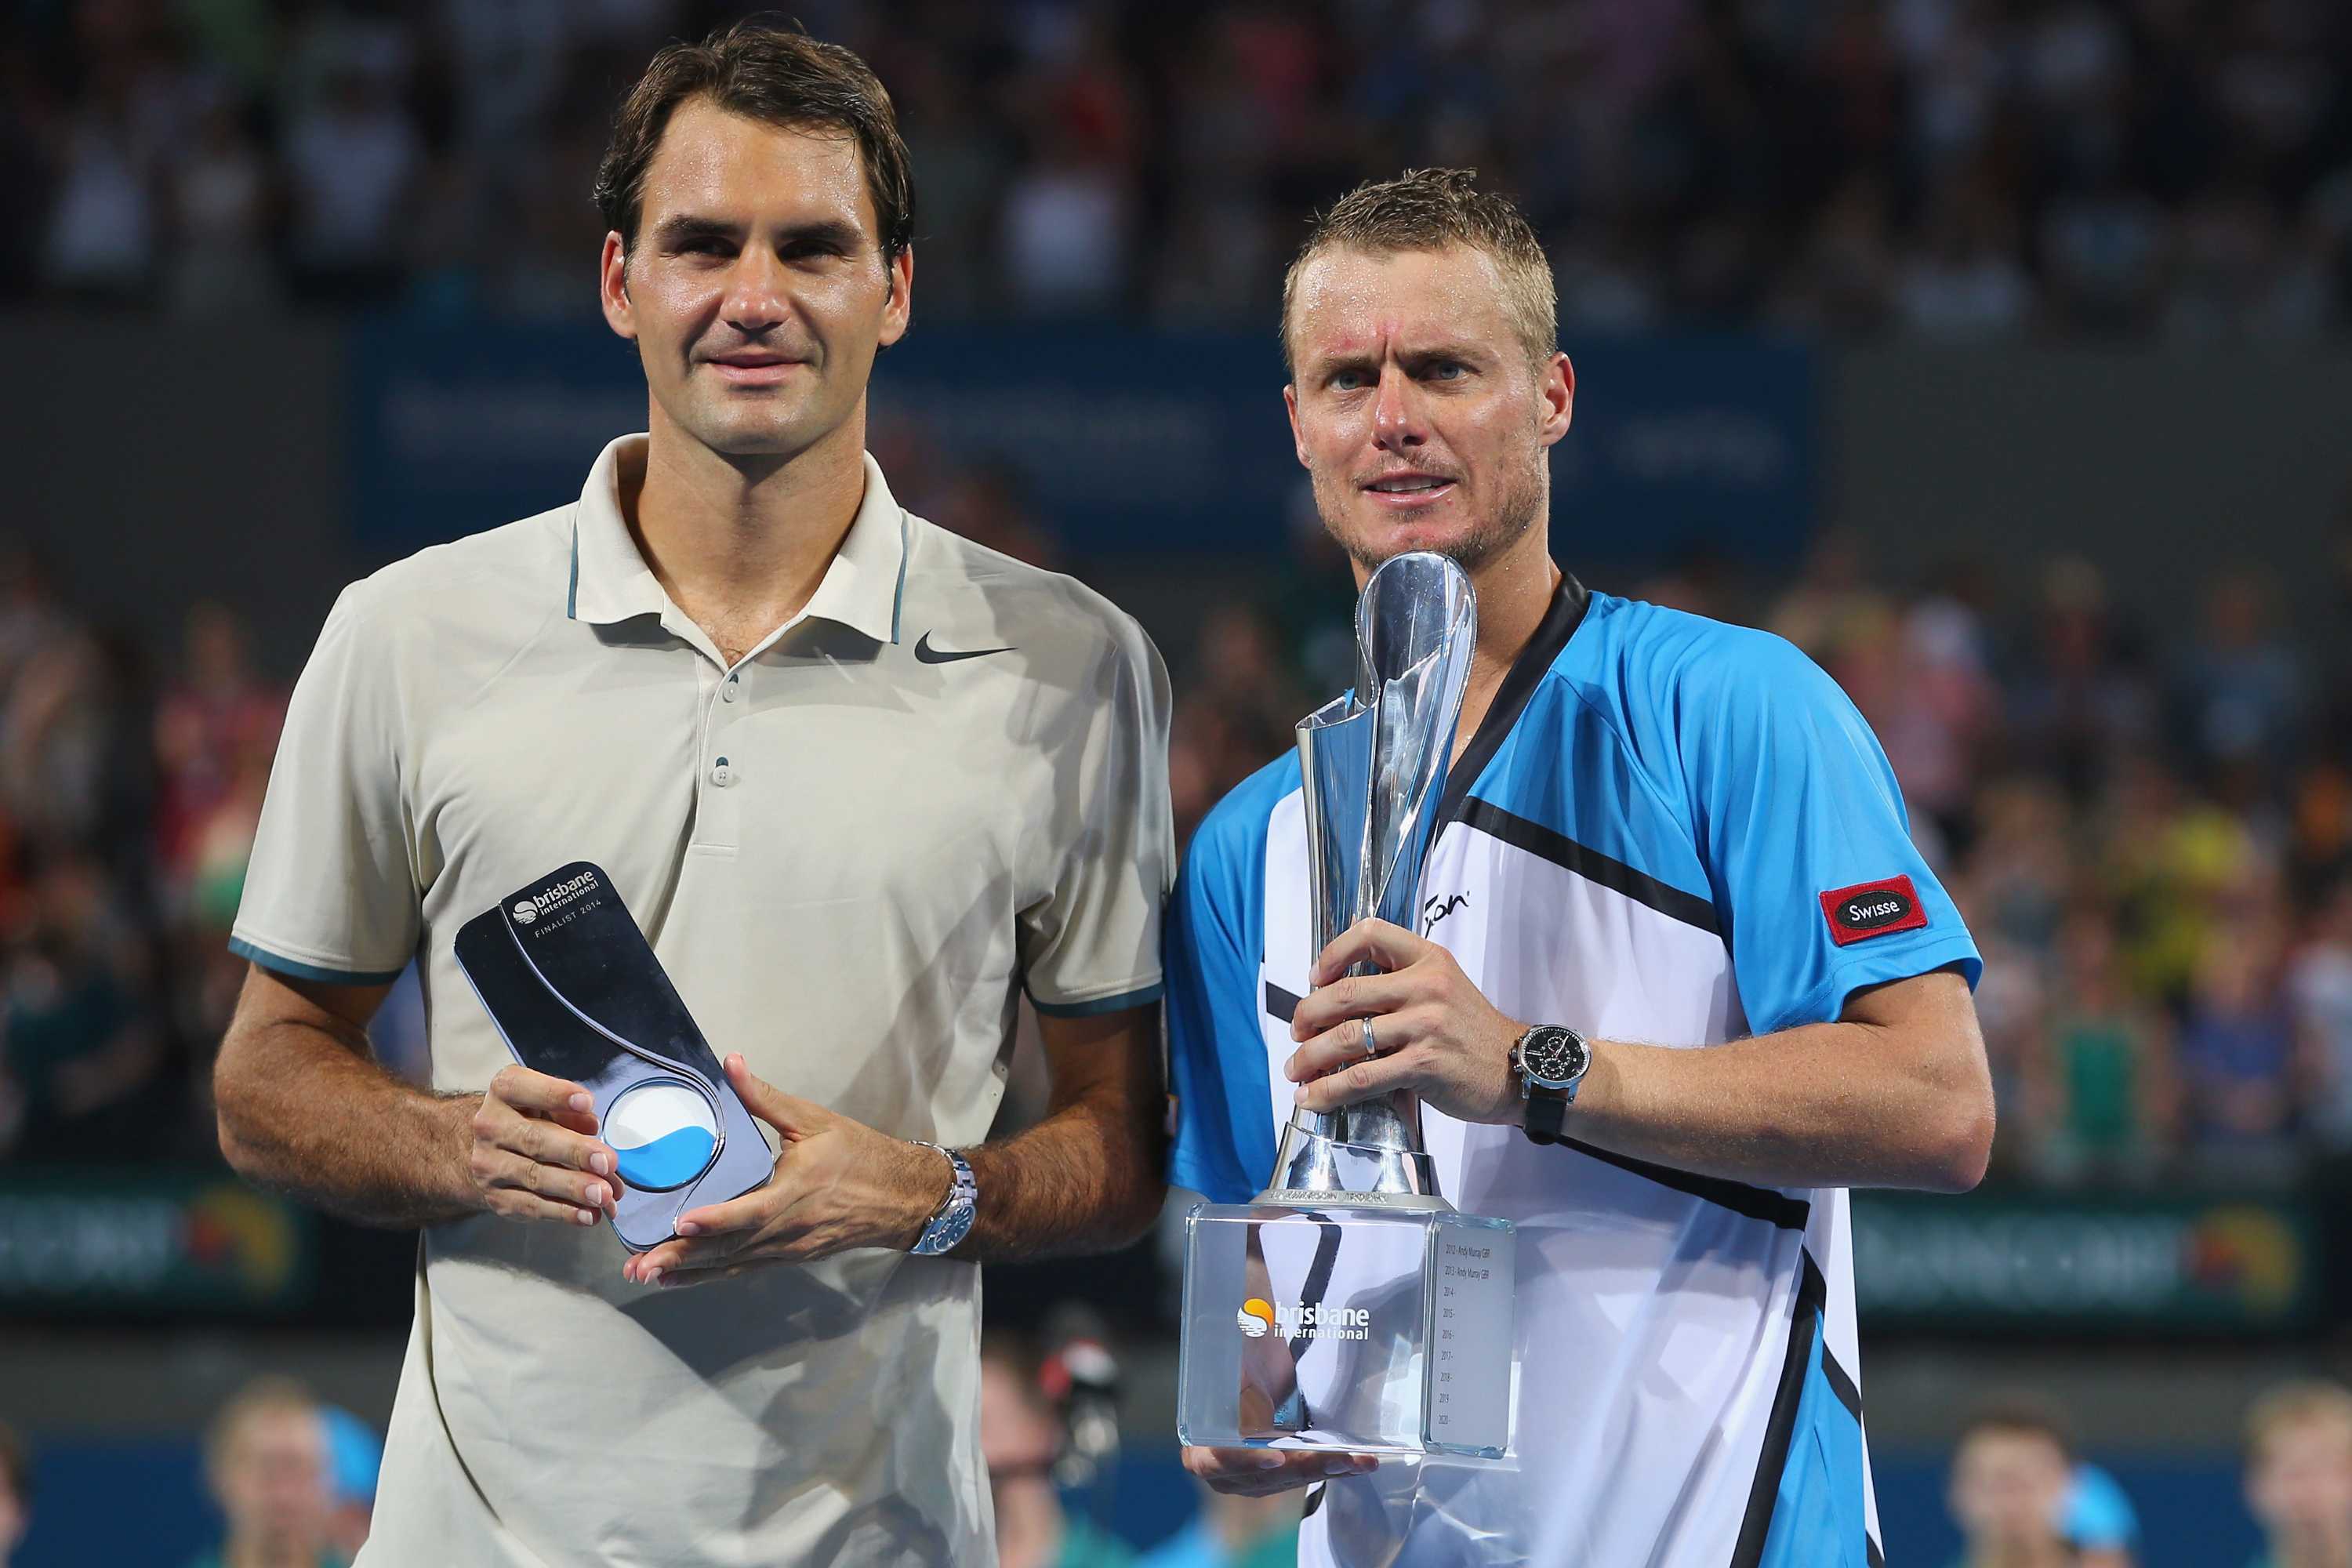 Lleyton Hewitt (R) holds the 2014 Brisbane International trophy after beating Roger Federer (L).